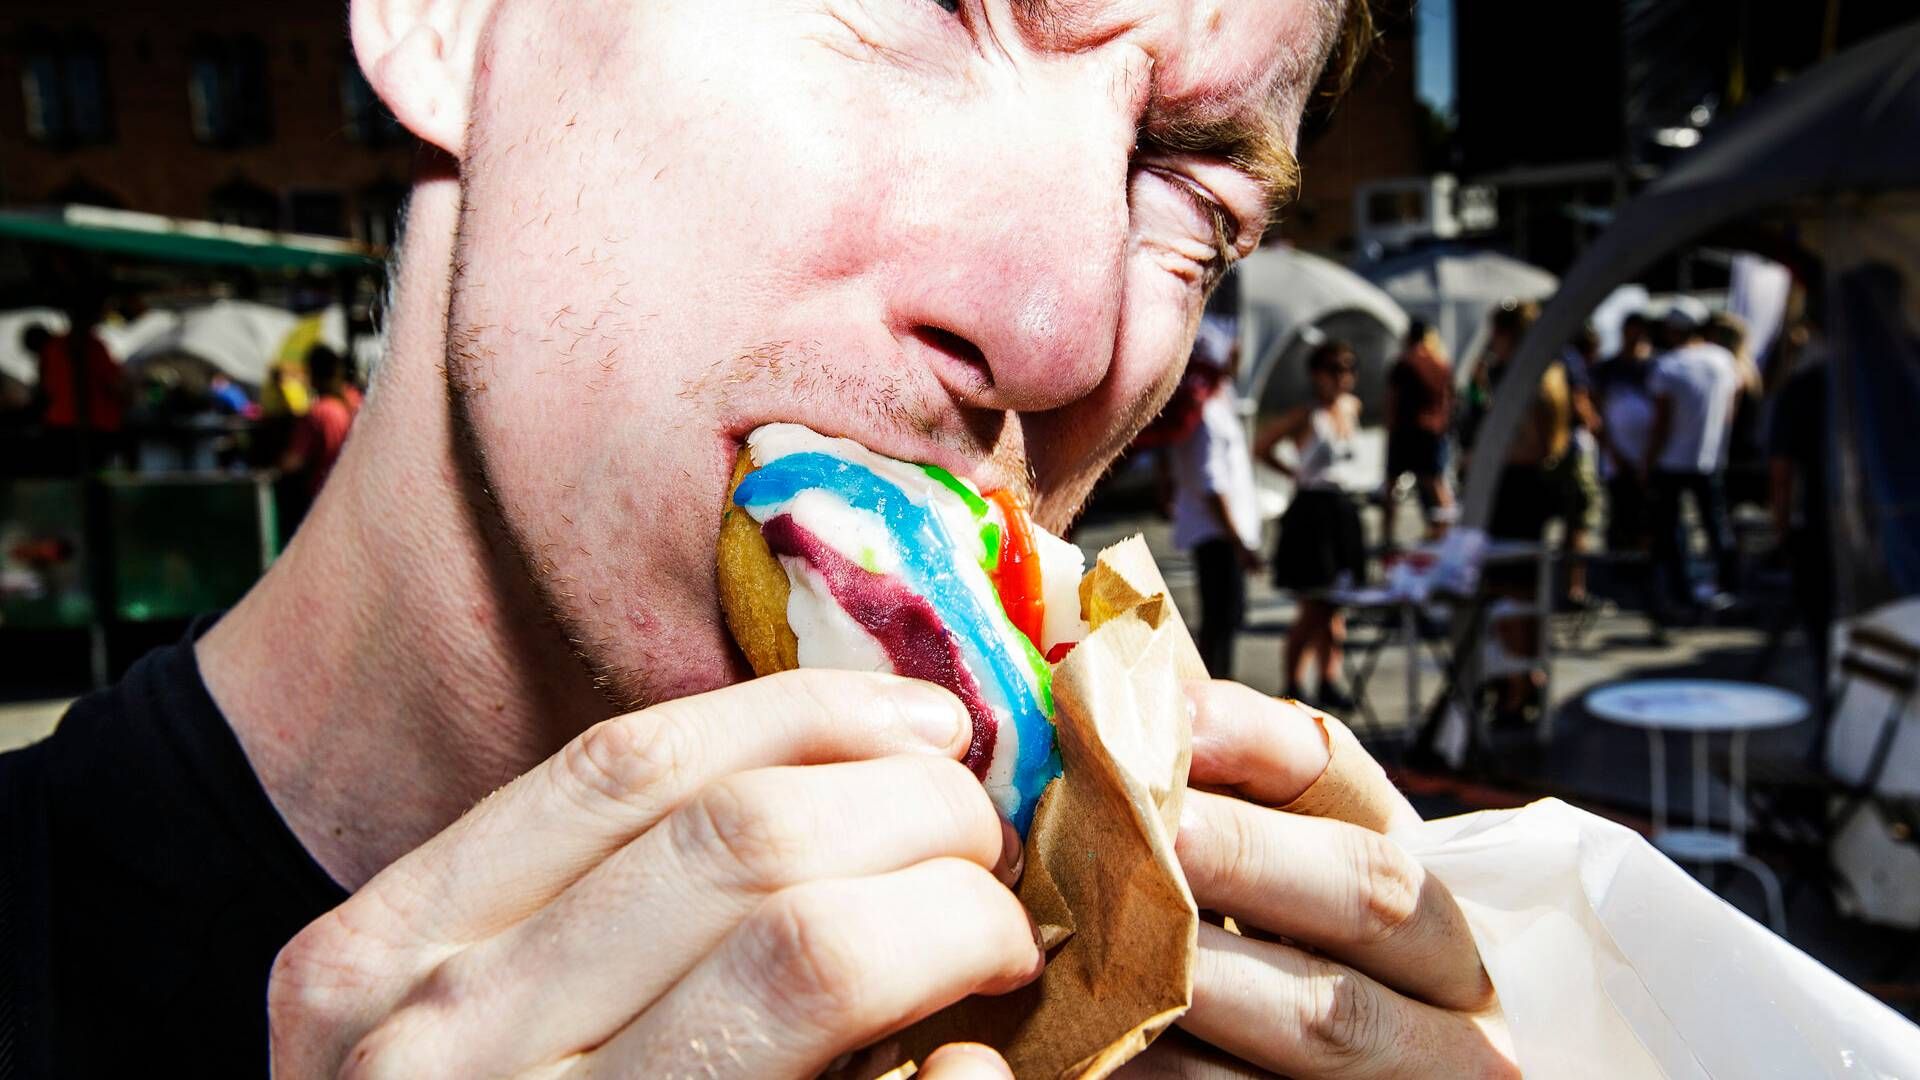 7-Eleven, her med regnbuefarvede doughnuts fra en tidligere Pride-fejring, forbliver sponsor i år. | Foto: Anders Rye Skjoldjensen/Politiken/Ritzau Scanpix